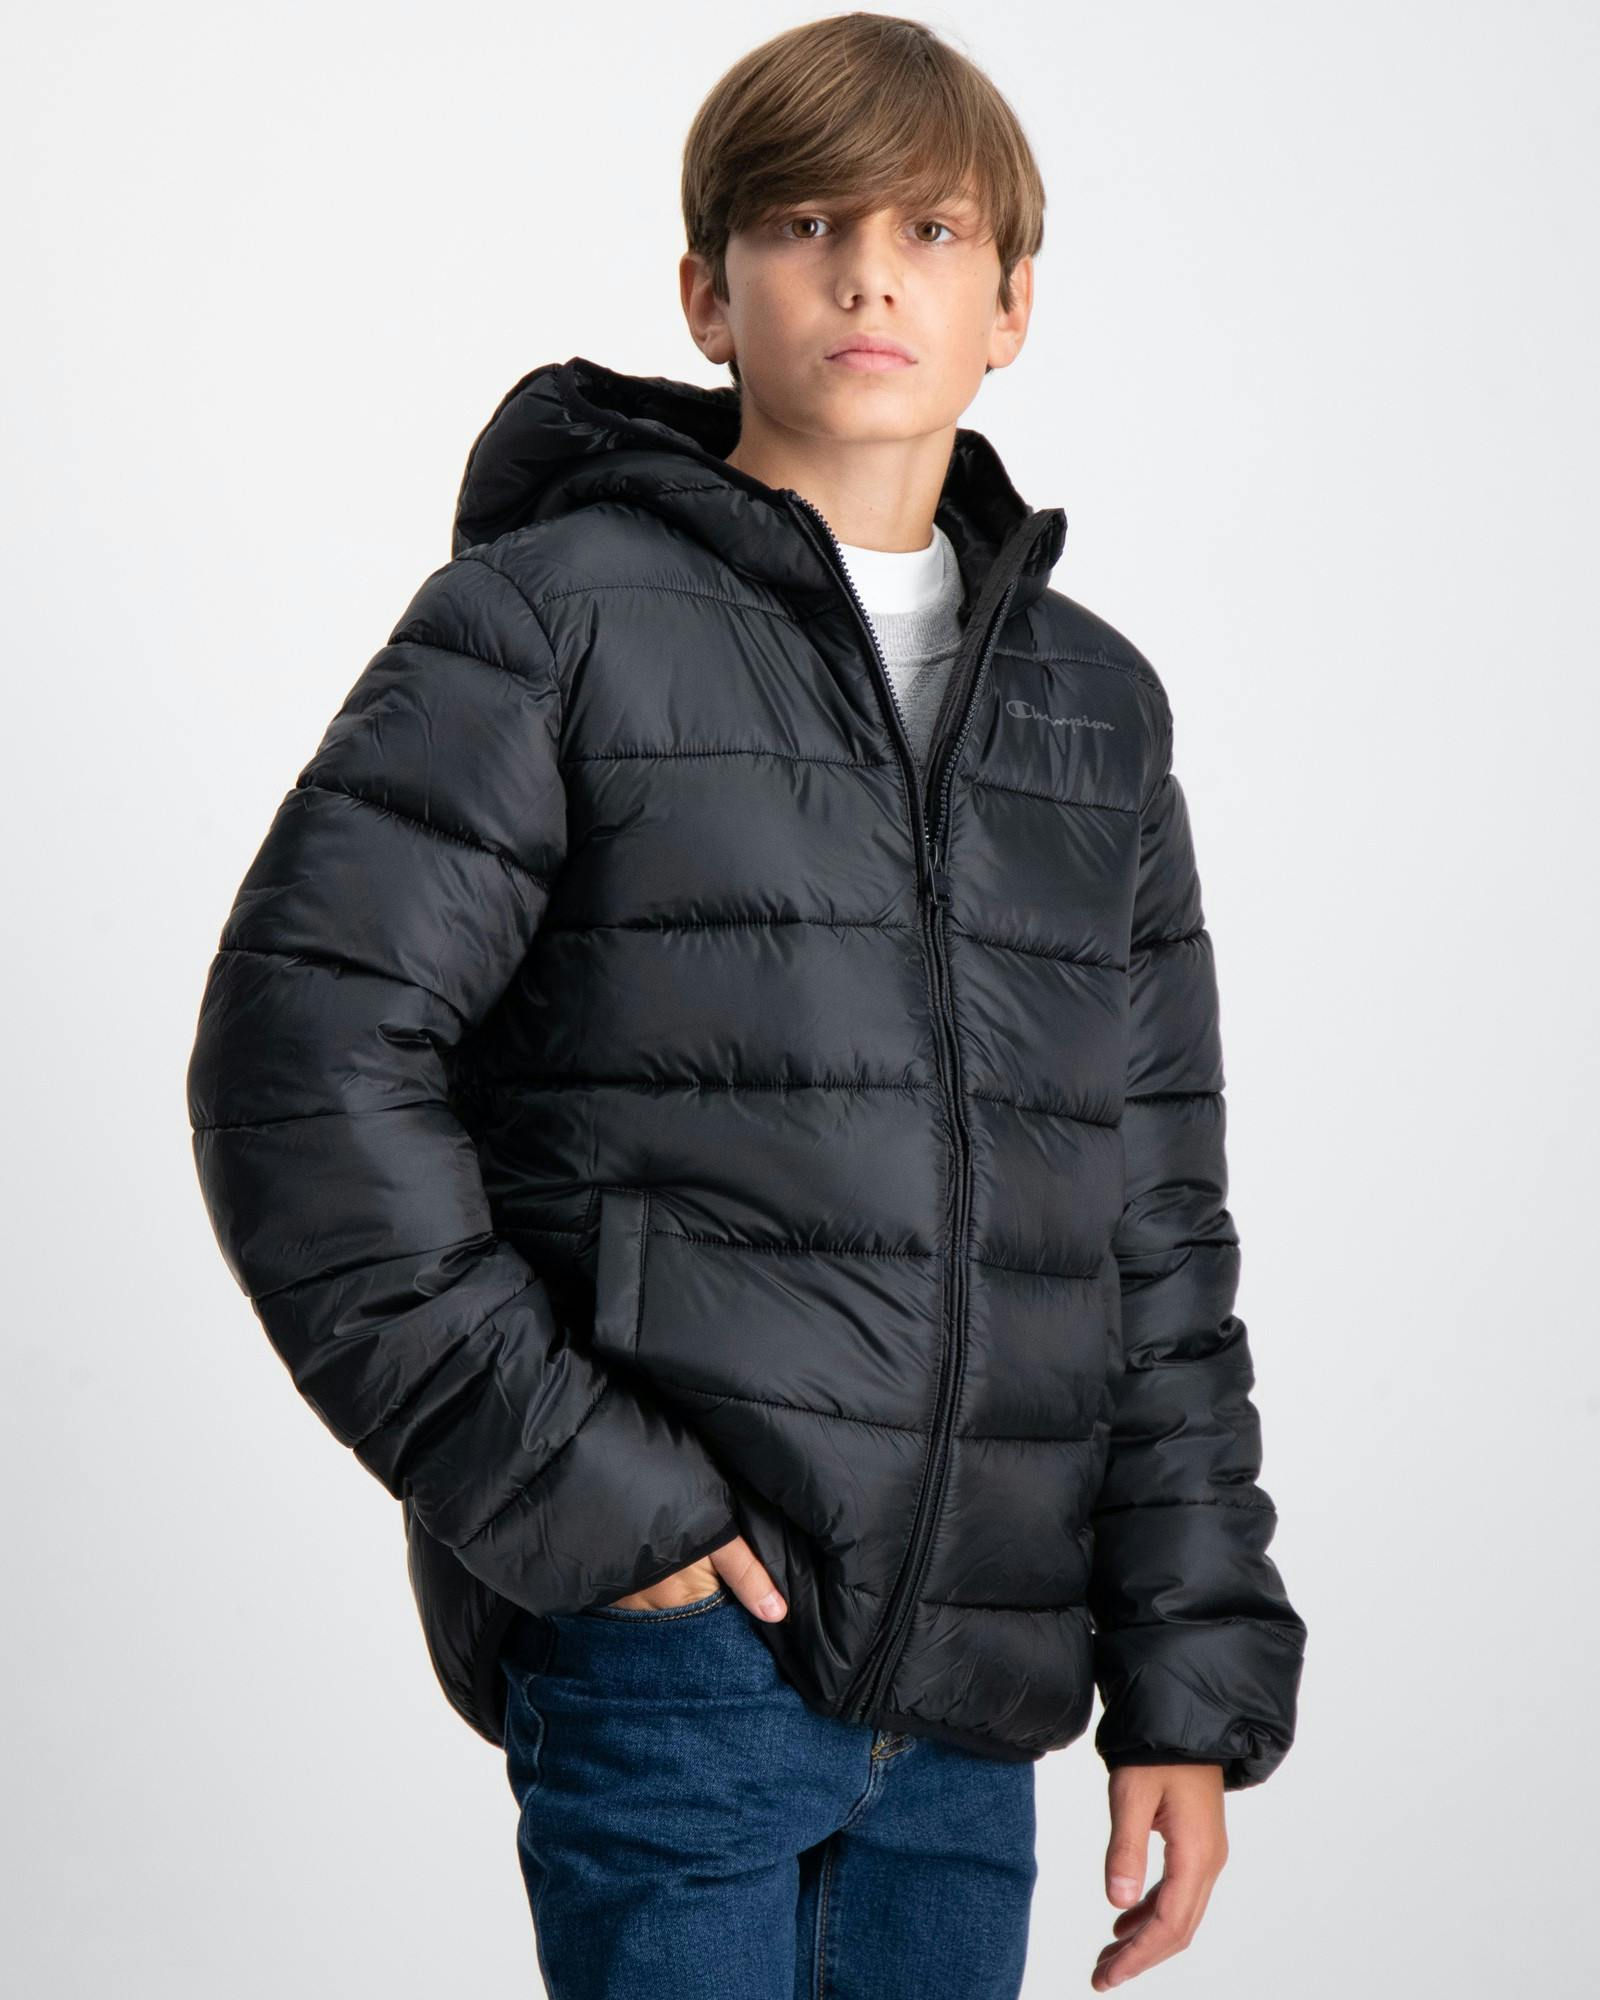 Schwarz Hooded Jacket für | Jungen Kids Store Brand